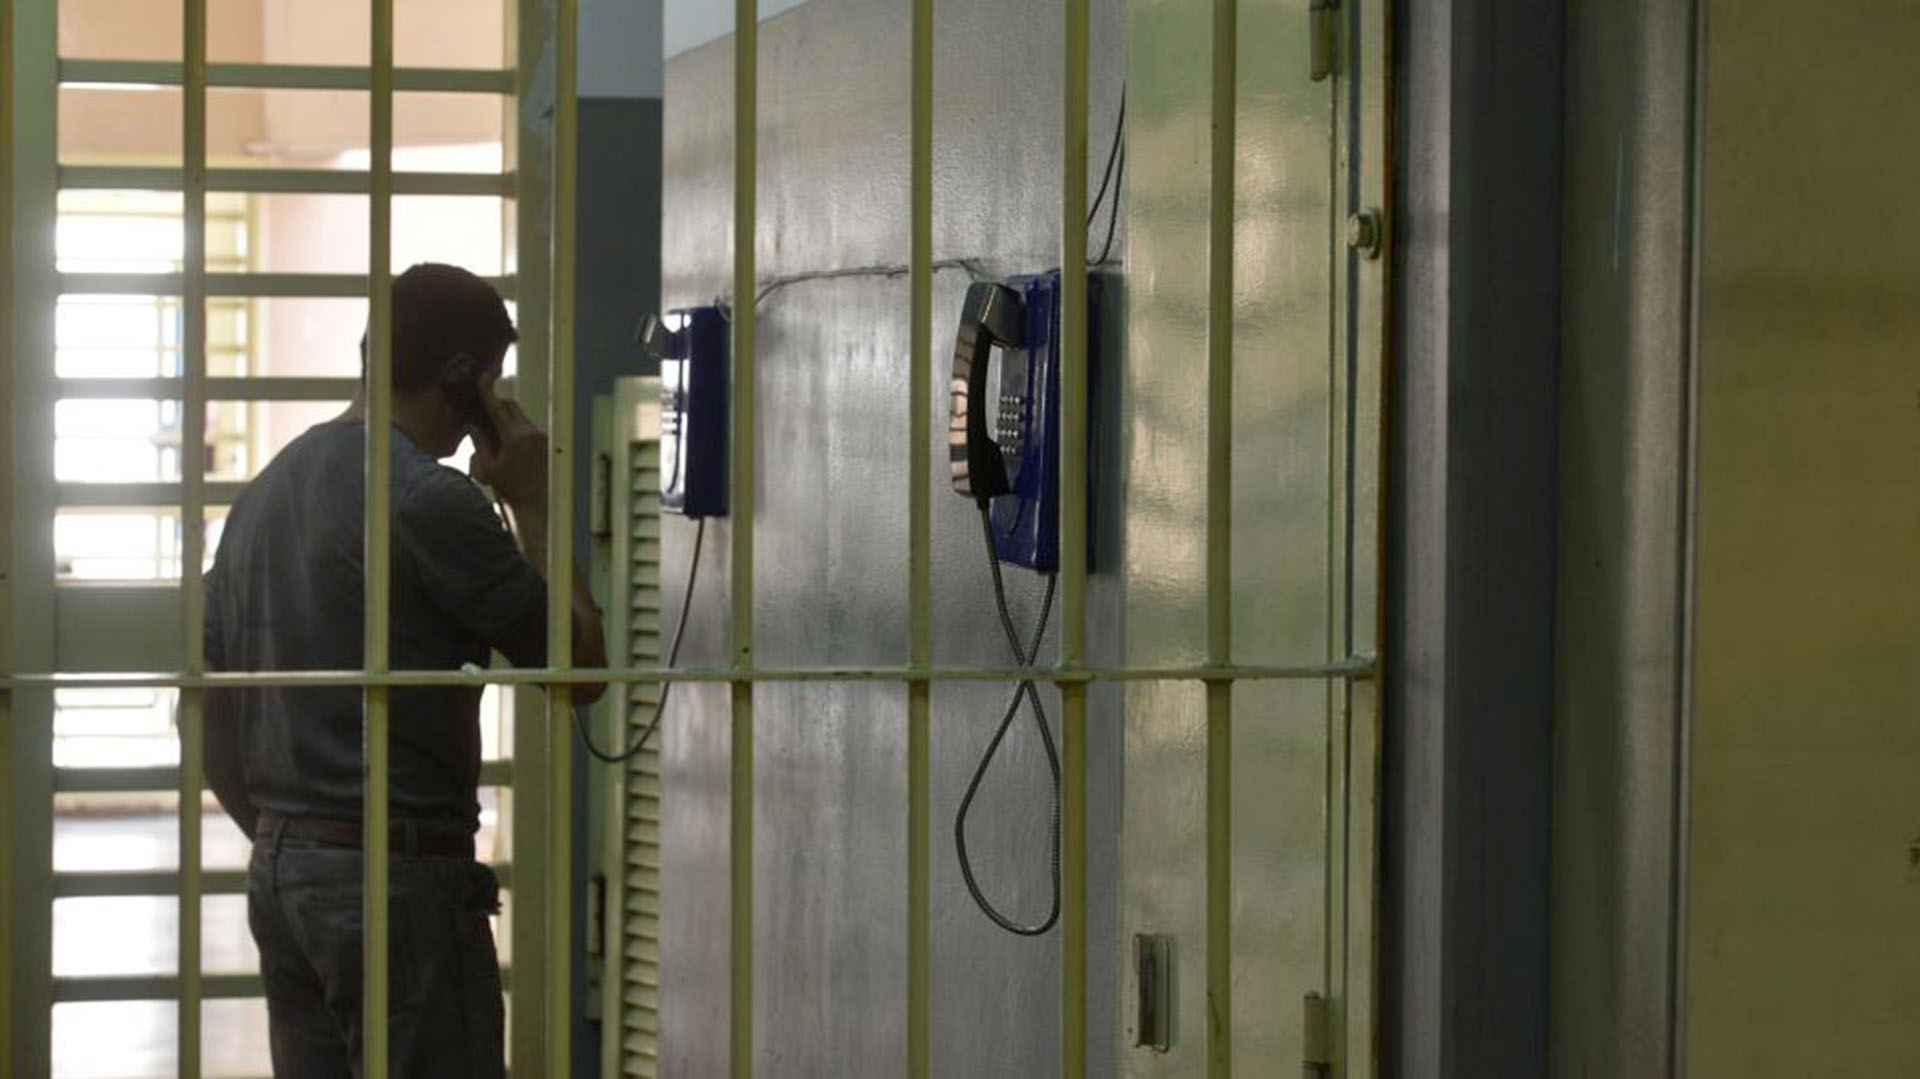 Antes de la pandamia, los presos podían hacer un llamado desdelos teléfonos públicos, cuyo mensaje previo avisaba que provenía de una cárcel (Ramiro Pereyra/La Voz)